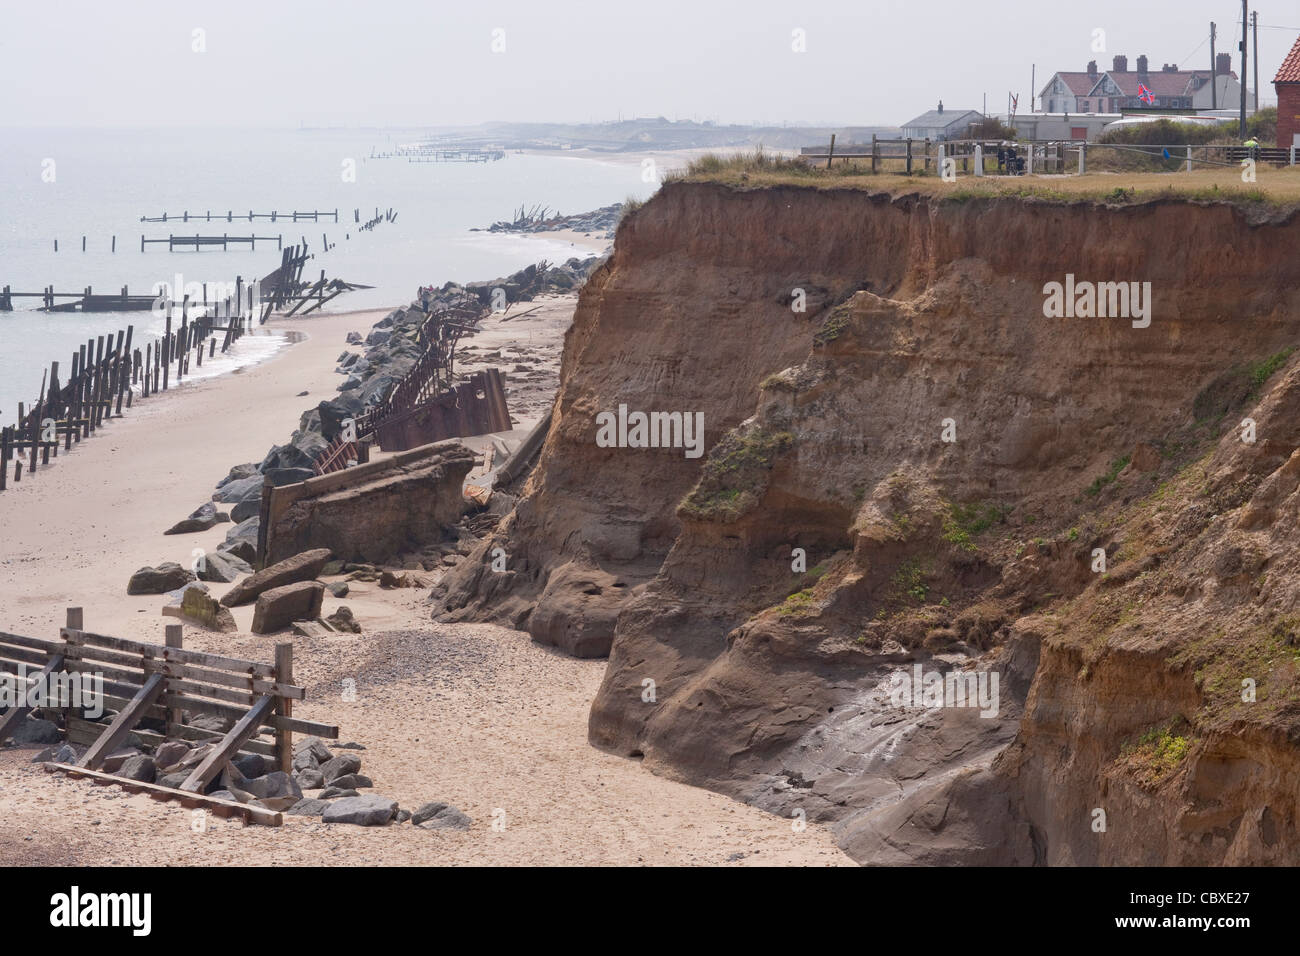 Happisburgh Küste, North Norfolk, East Anglia. Erosion der Felsen an der Nordsee; Häuser, weiter. Importierte Felsen unten Stockfoto